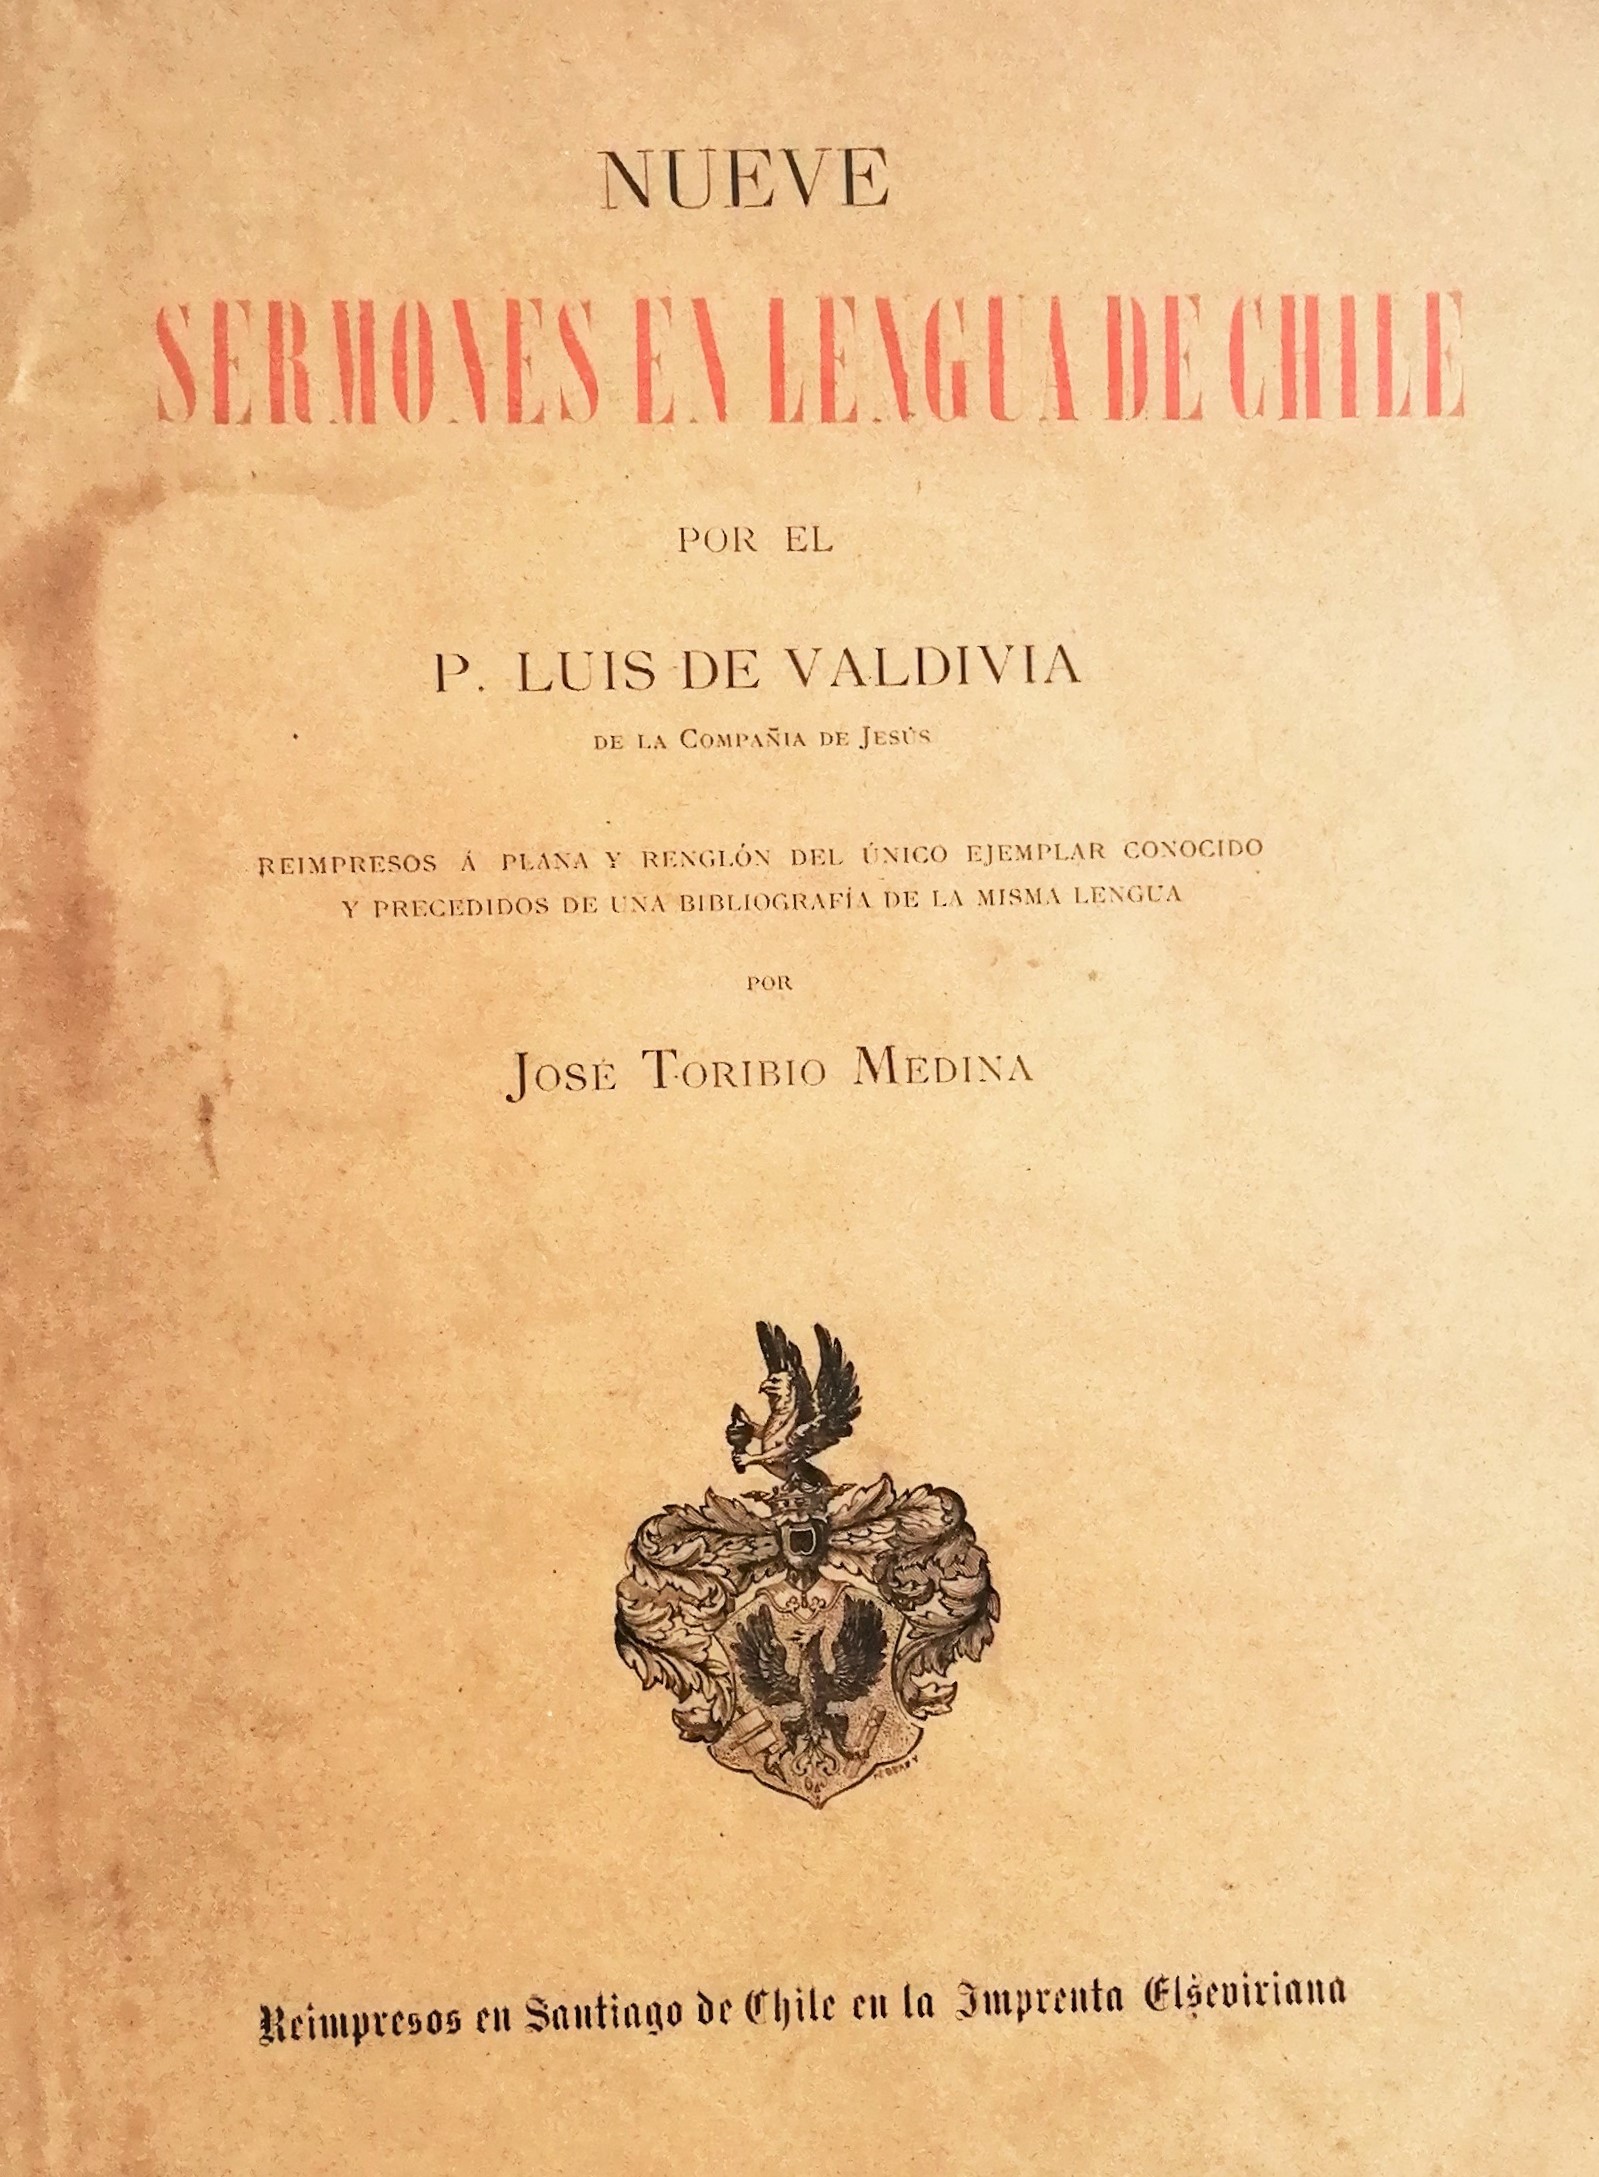 Padre Luis de Valdivia - Nueve Sermones en lengua de Chile